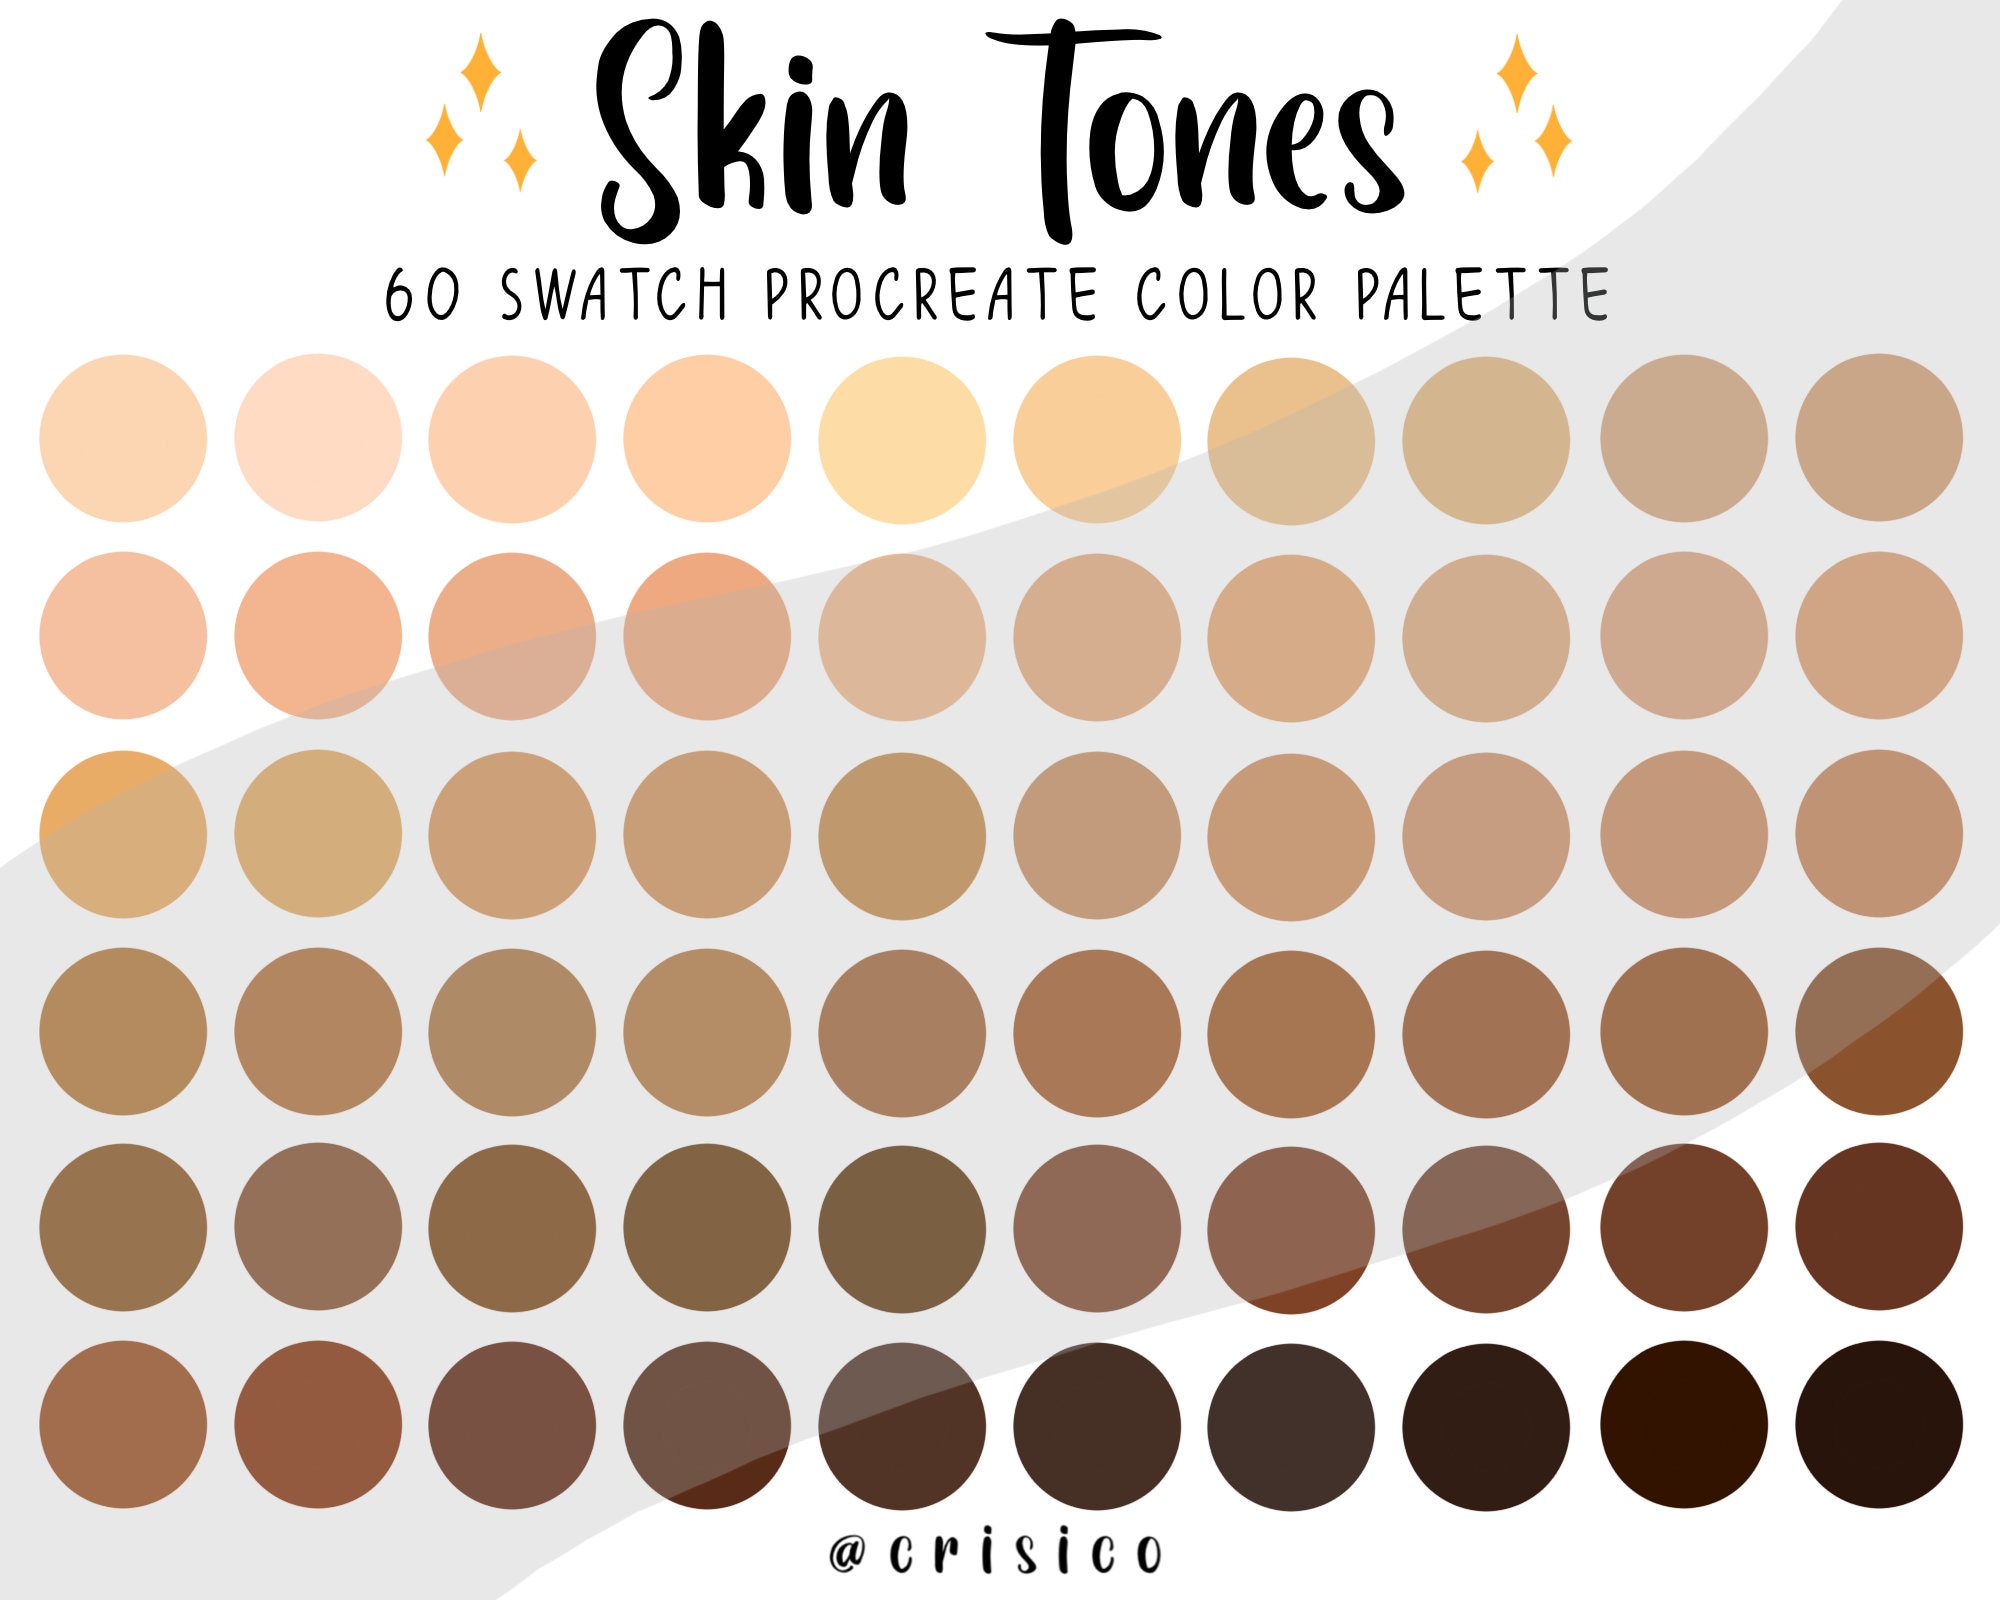 Daddy krak ledsage Skin Tones Procreate Color Palette / Light to Dark Skin Shade - Etsy